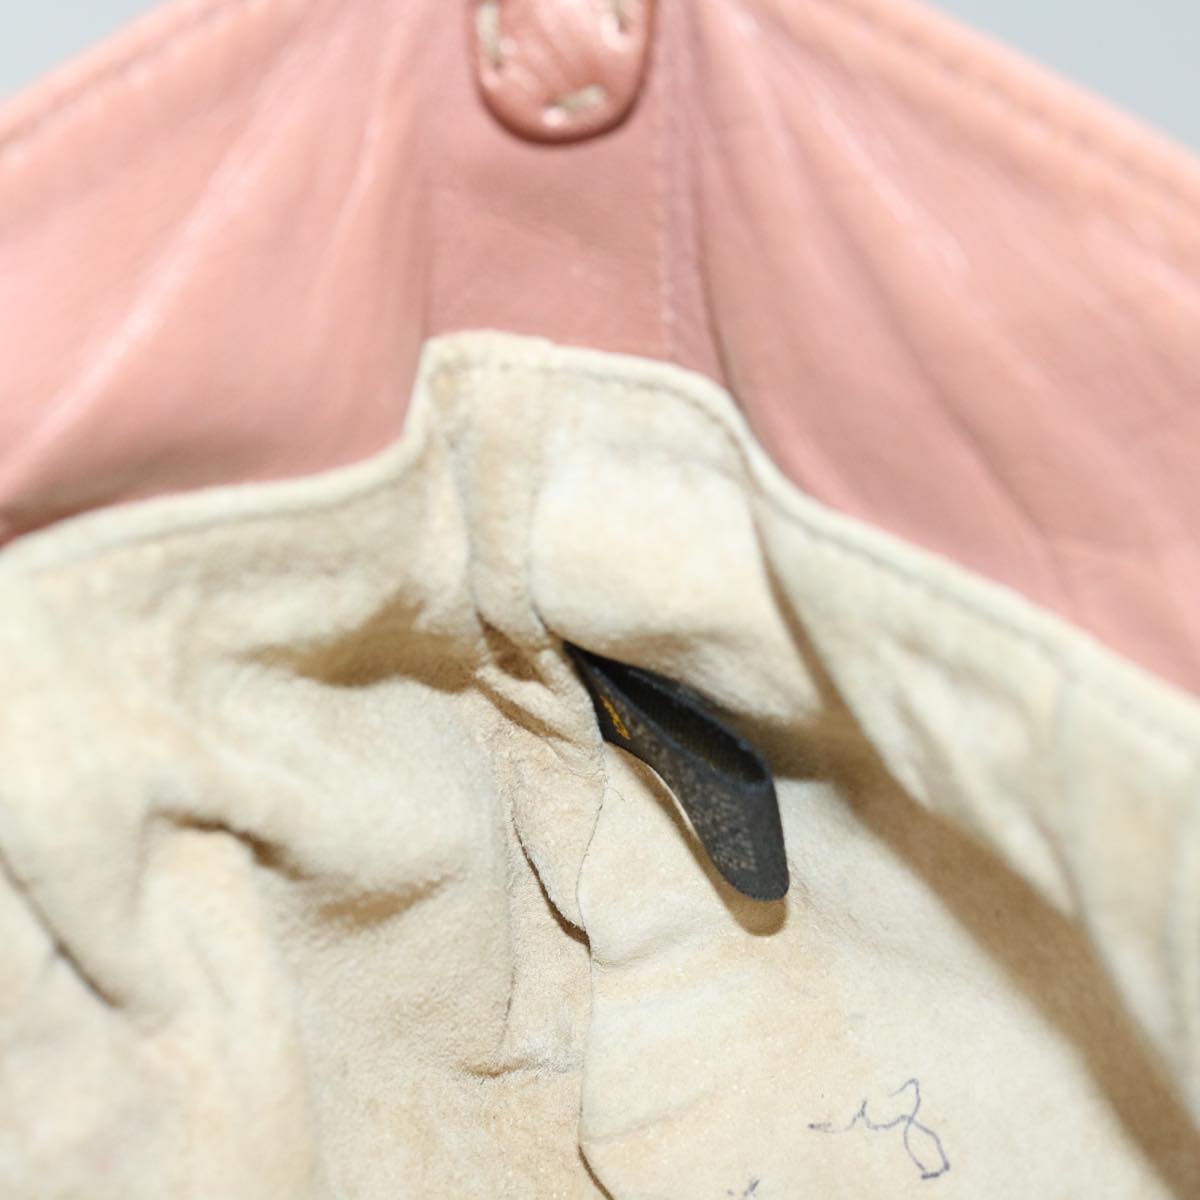 FENDI Celeria Shoulder Bag Leather Pink Auth bs12905